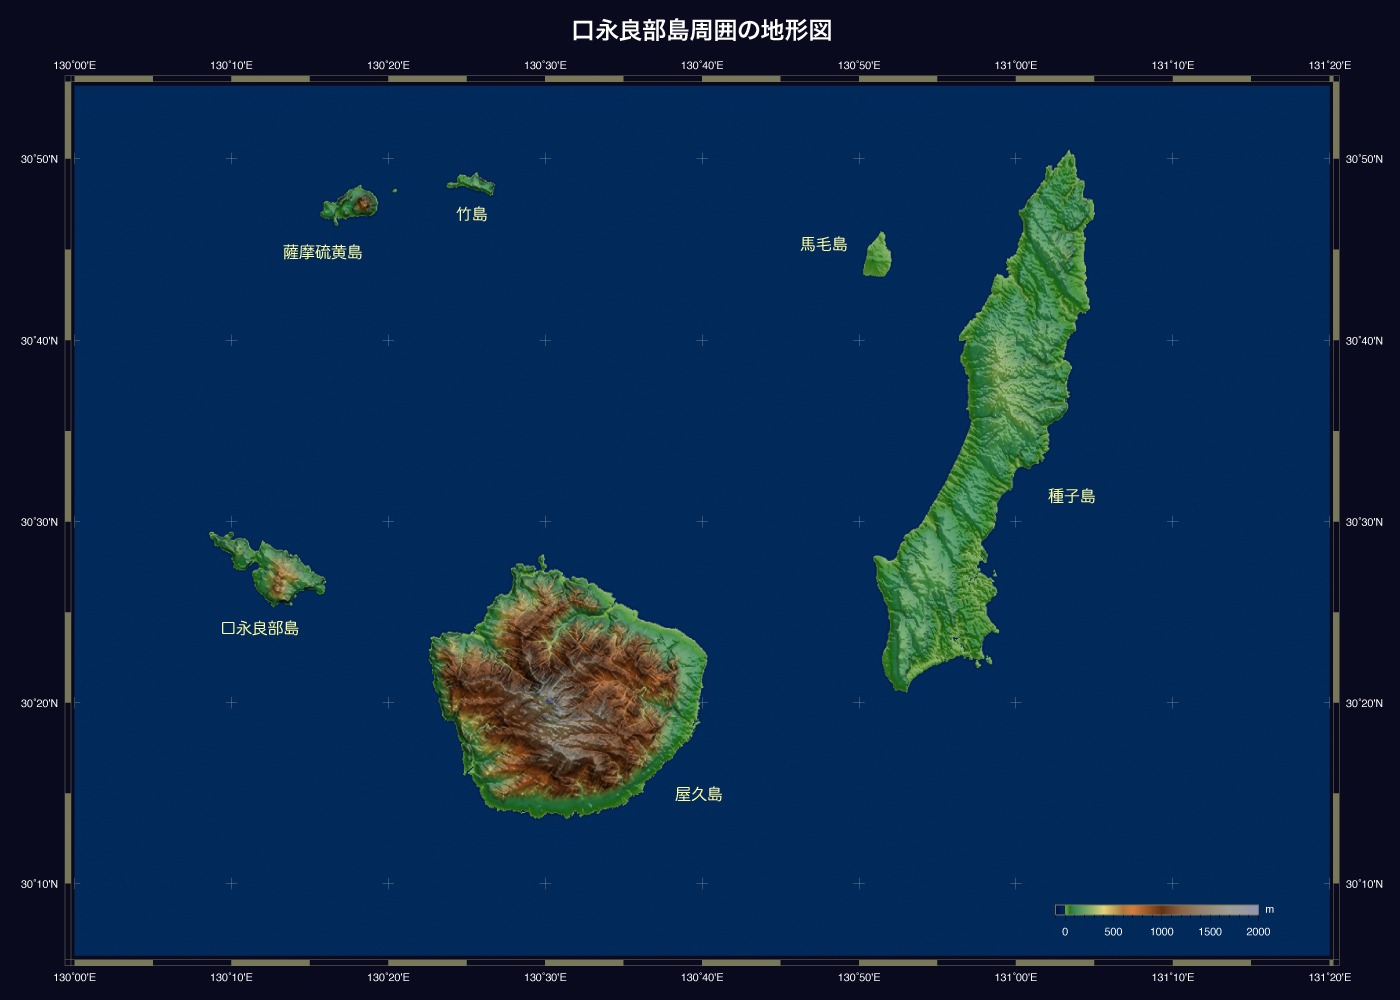 口永良部島地図